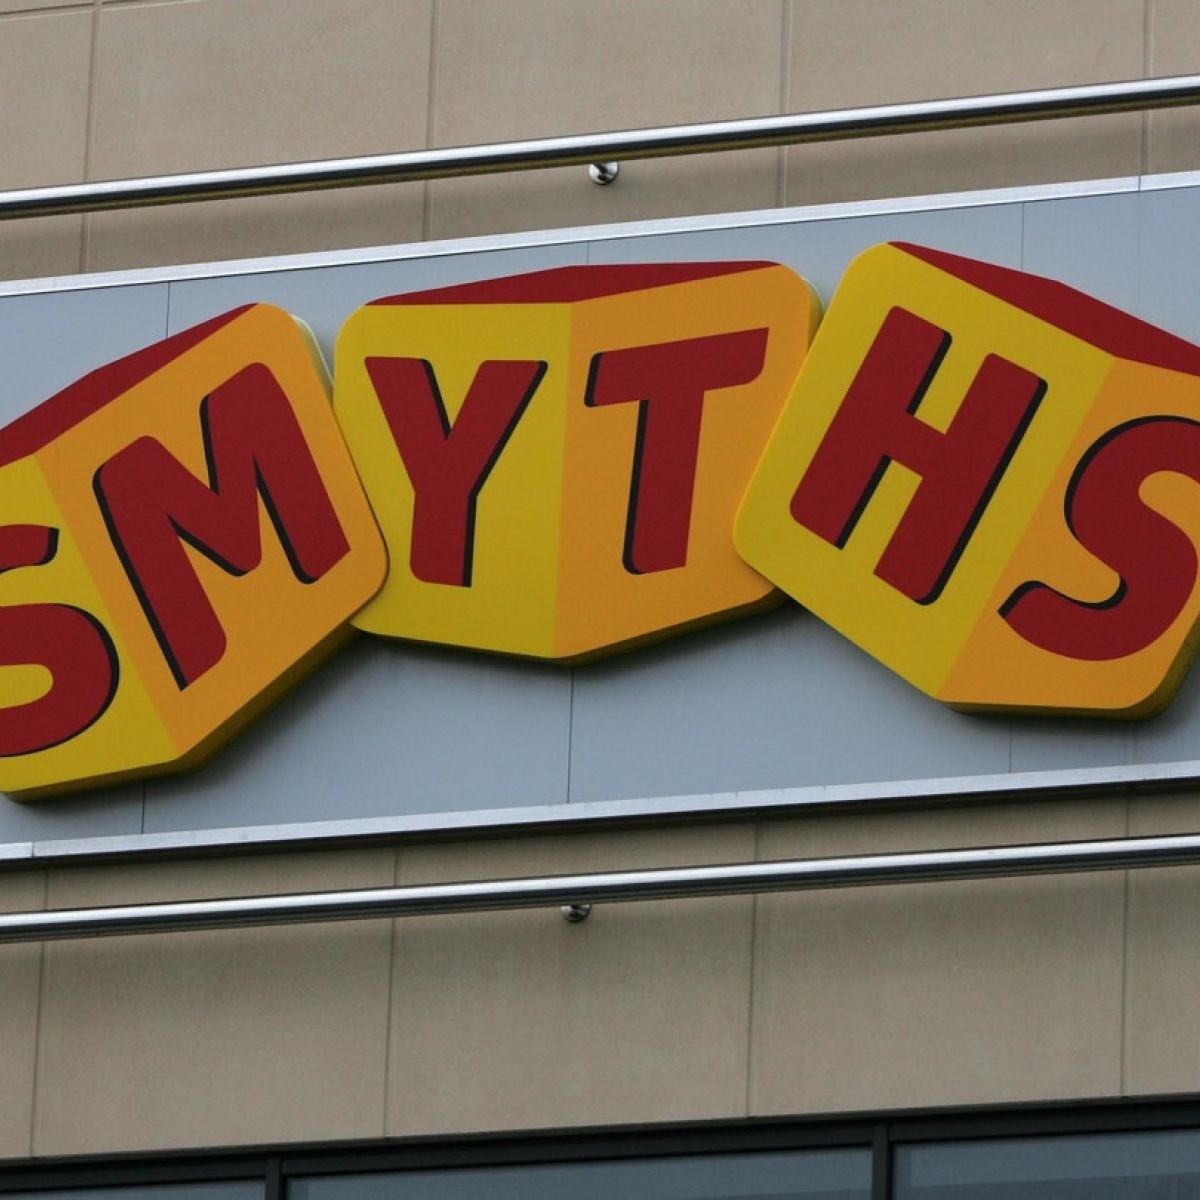 smyths toys app